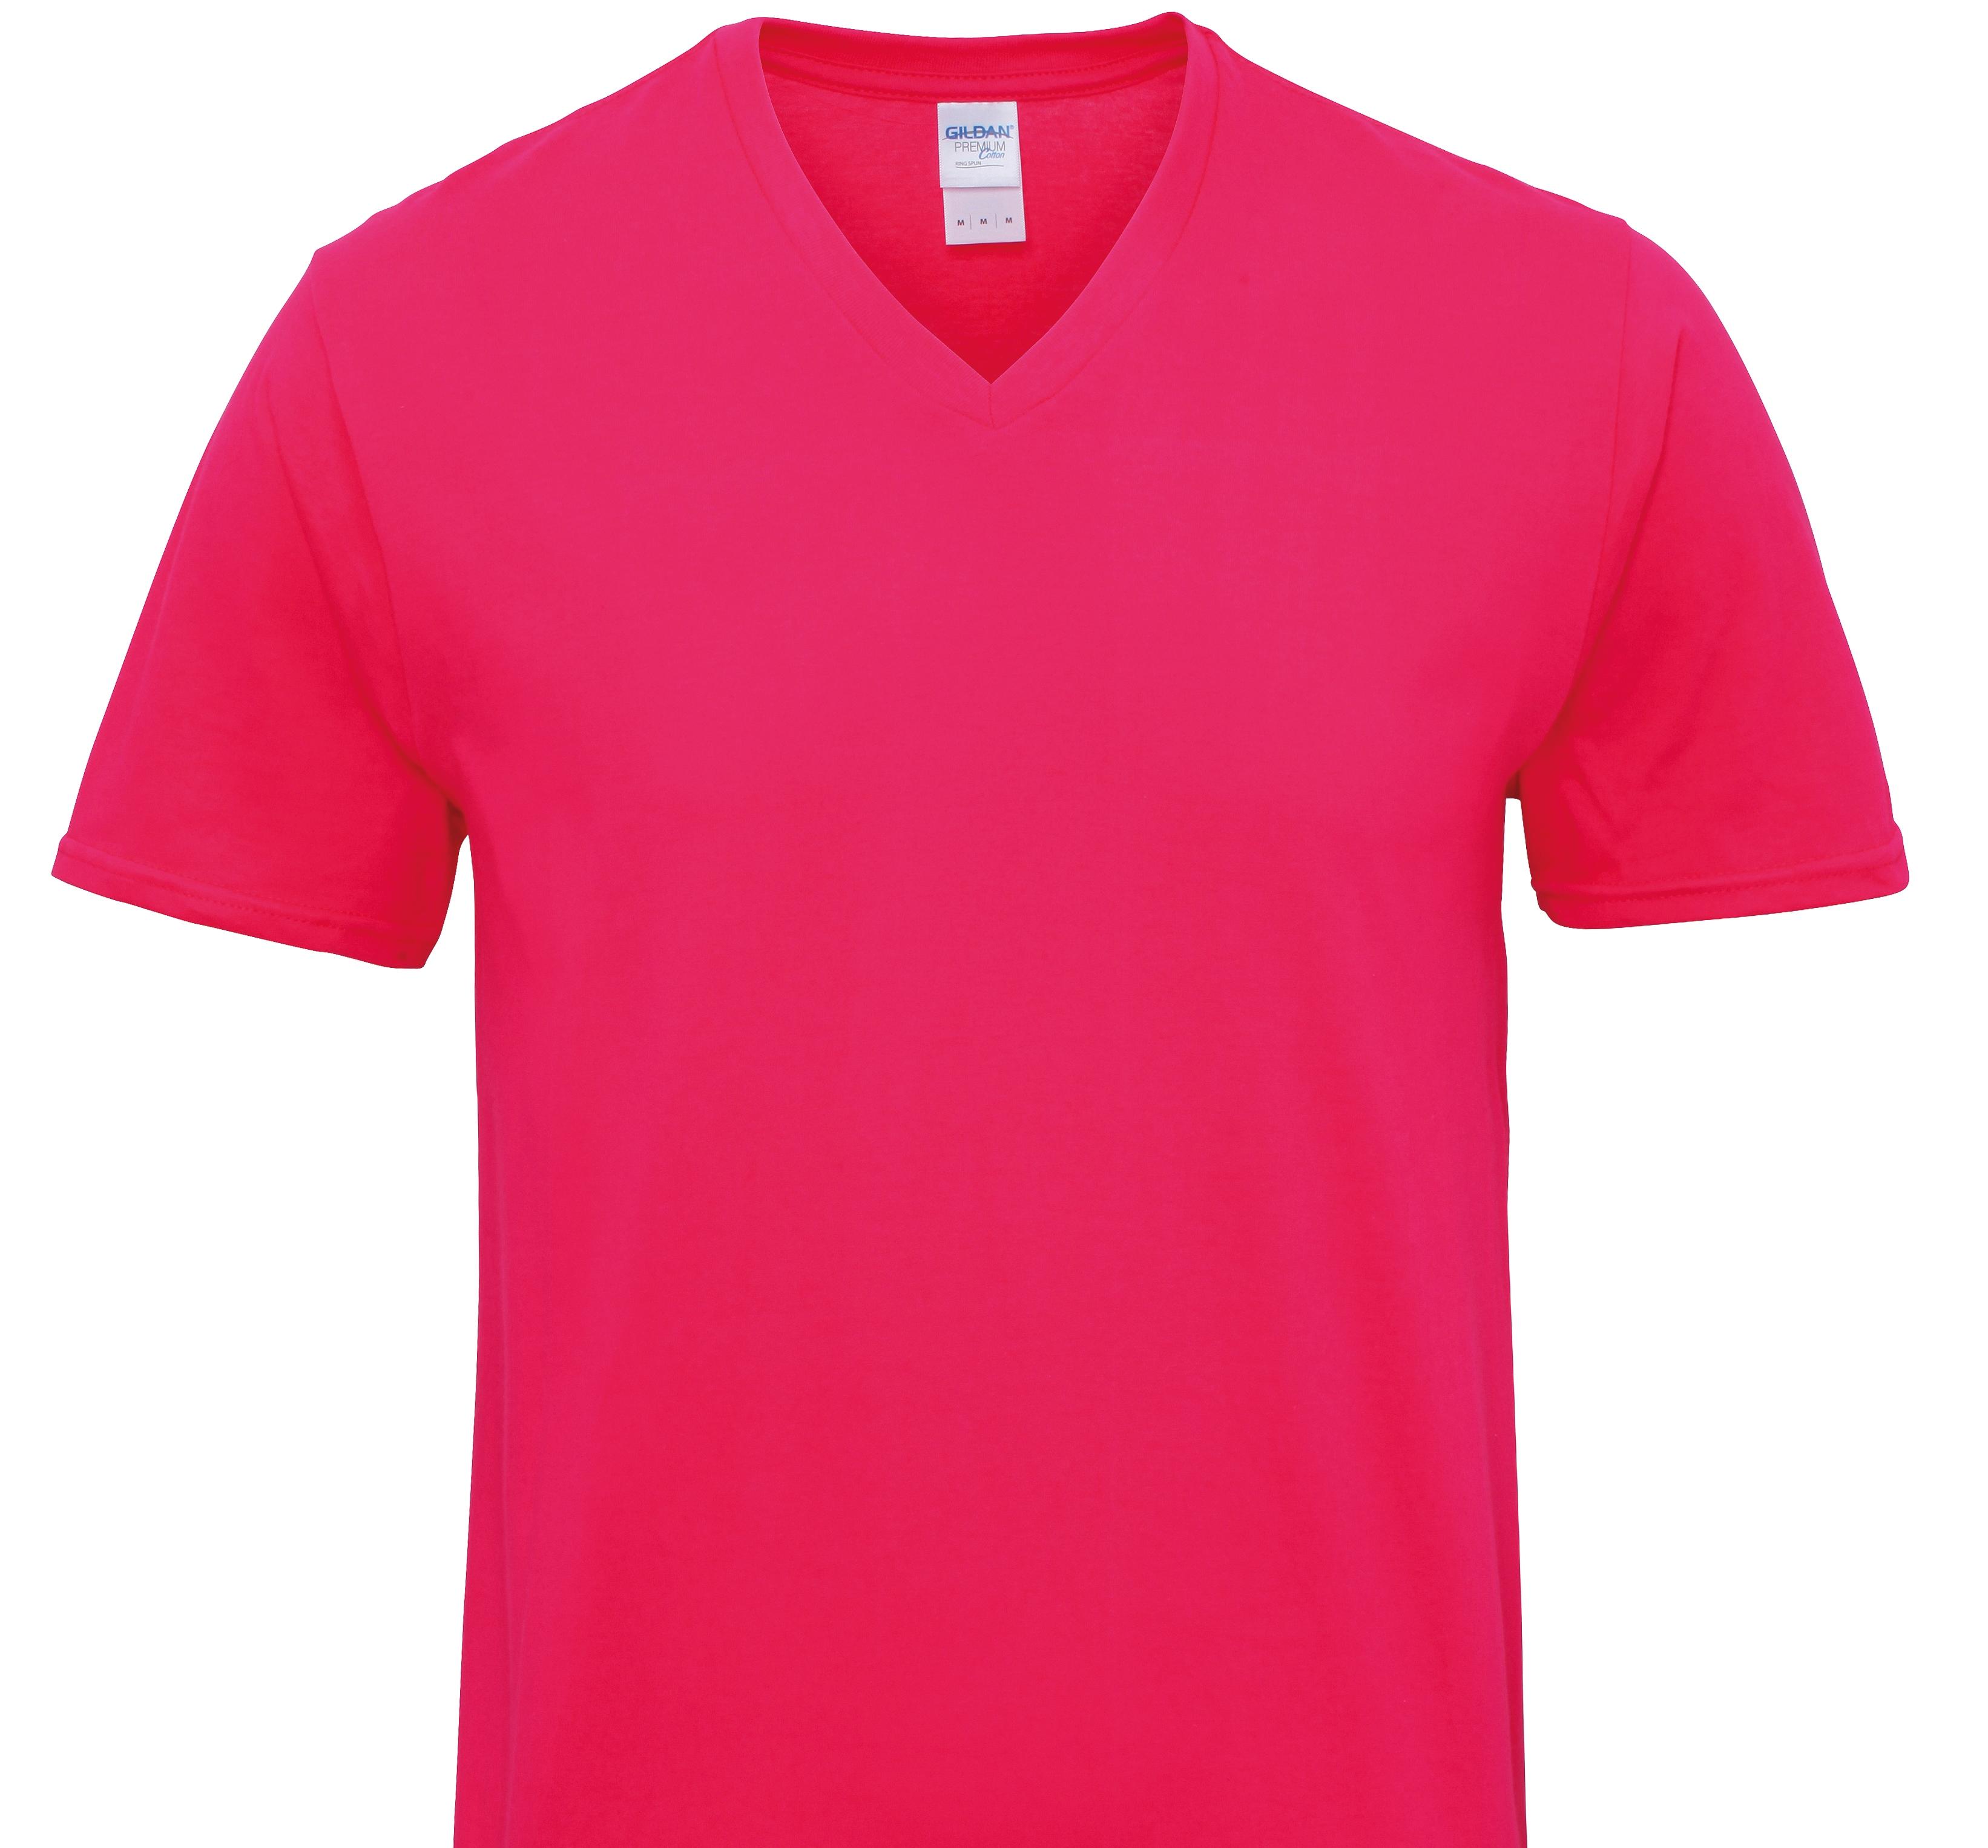 Corgi (Fluffy) Welsh Pembroke T-Shirts Women's V Neck Premium Cotton